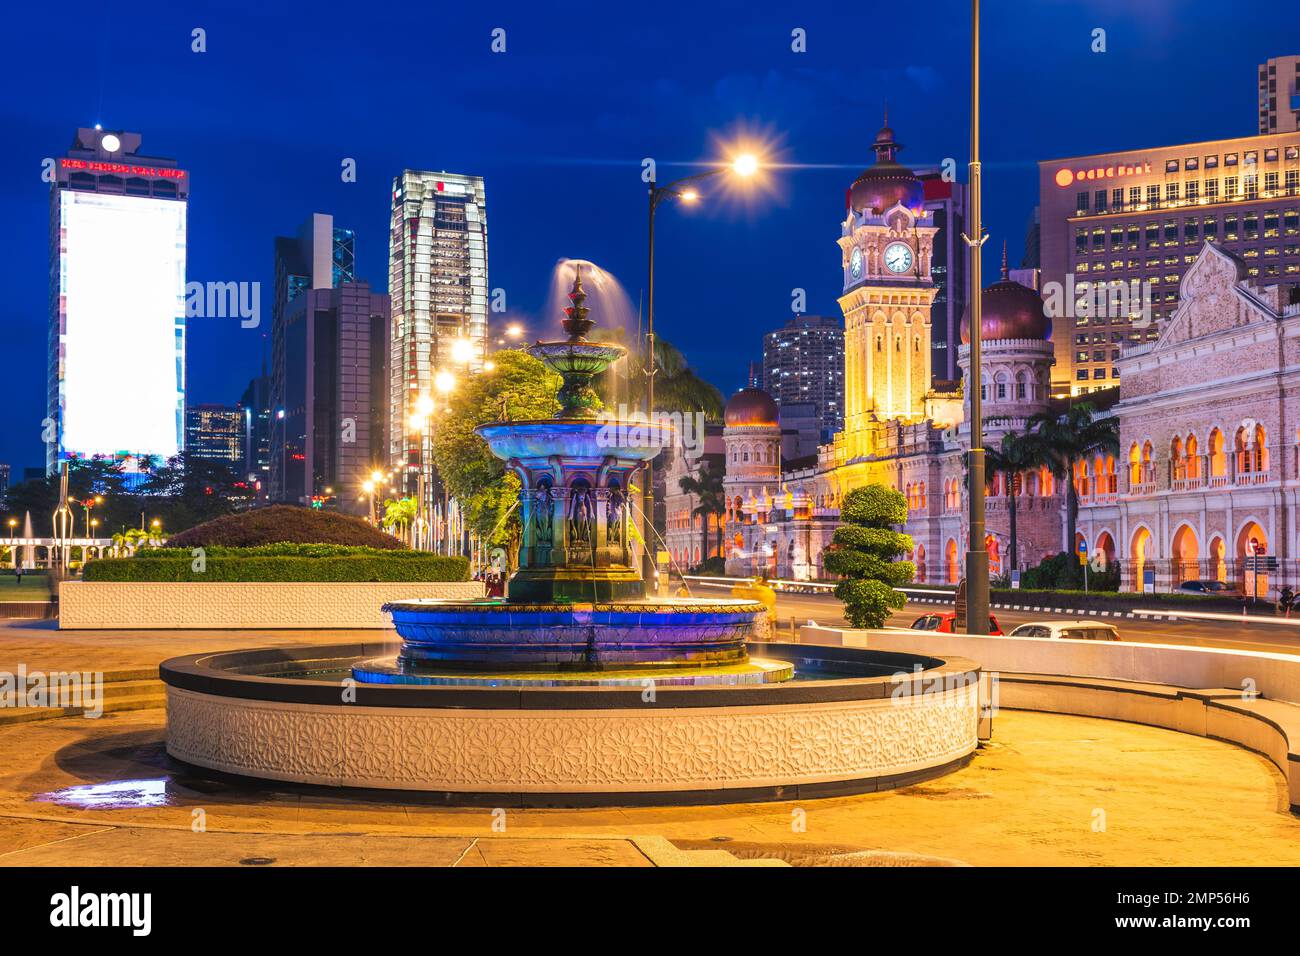 Bâtiment du sultan abdul samad et fontaine de la Reine Victoria à Kuala Lumpur, Malaisie Banque D'Images